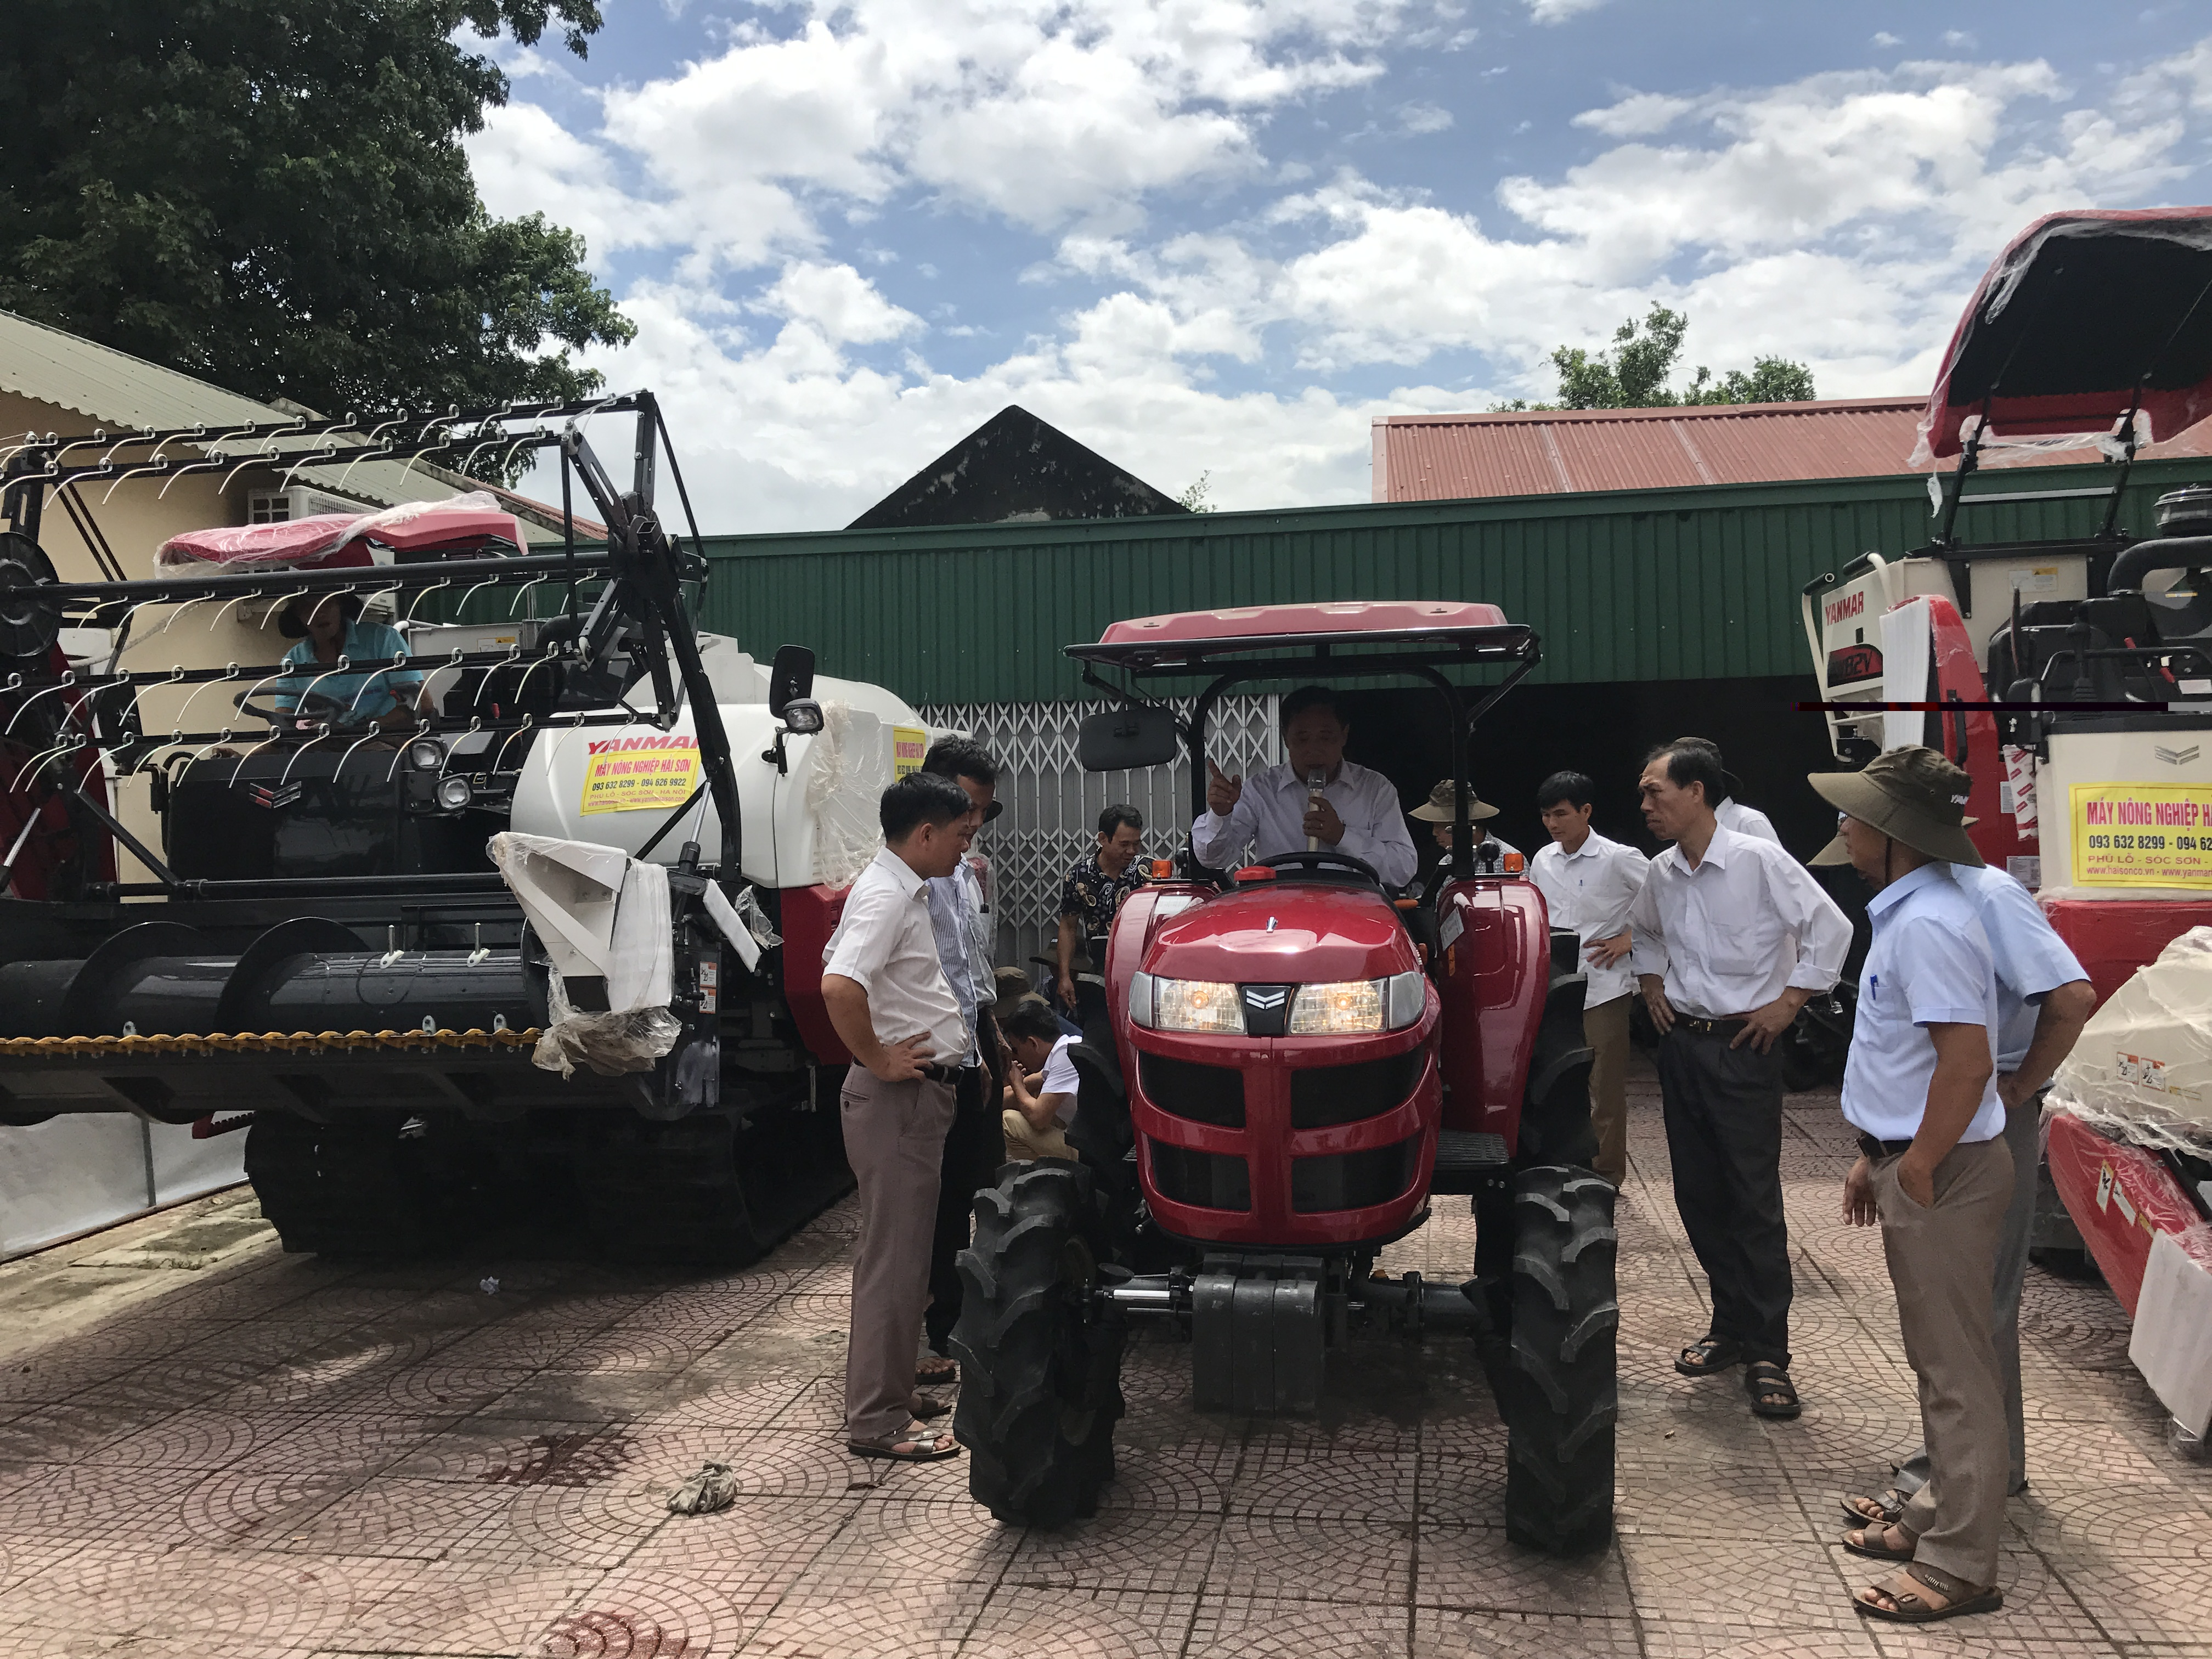 Hội nghị giới thiệu một số loại máy nông nghiệp thế hệ mới của hãng Yanmar Nhật Bản và quy chế hoạt động của Quỹ khuyến nông Hà Nội